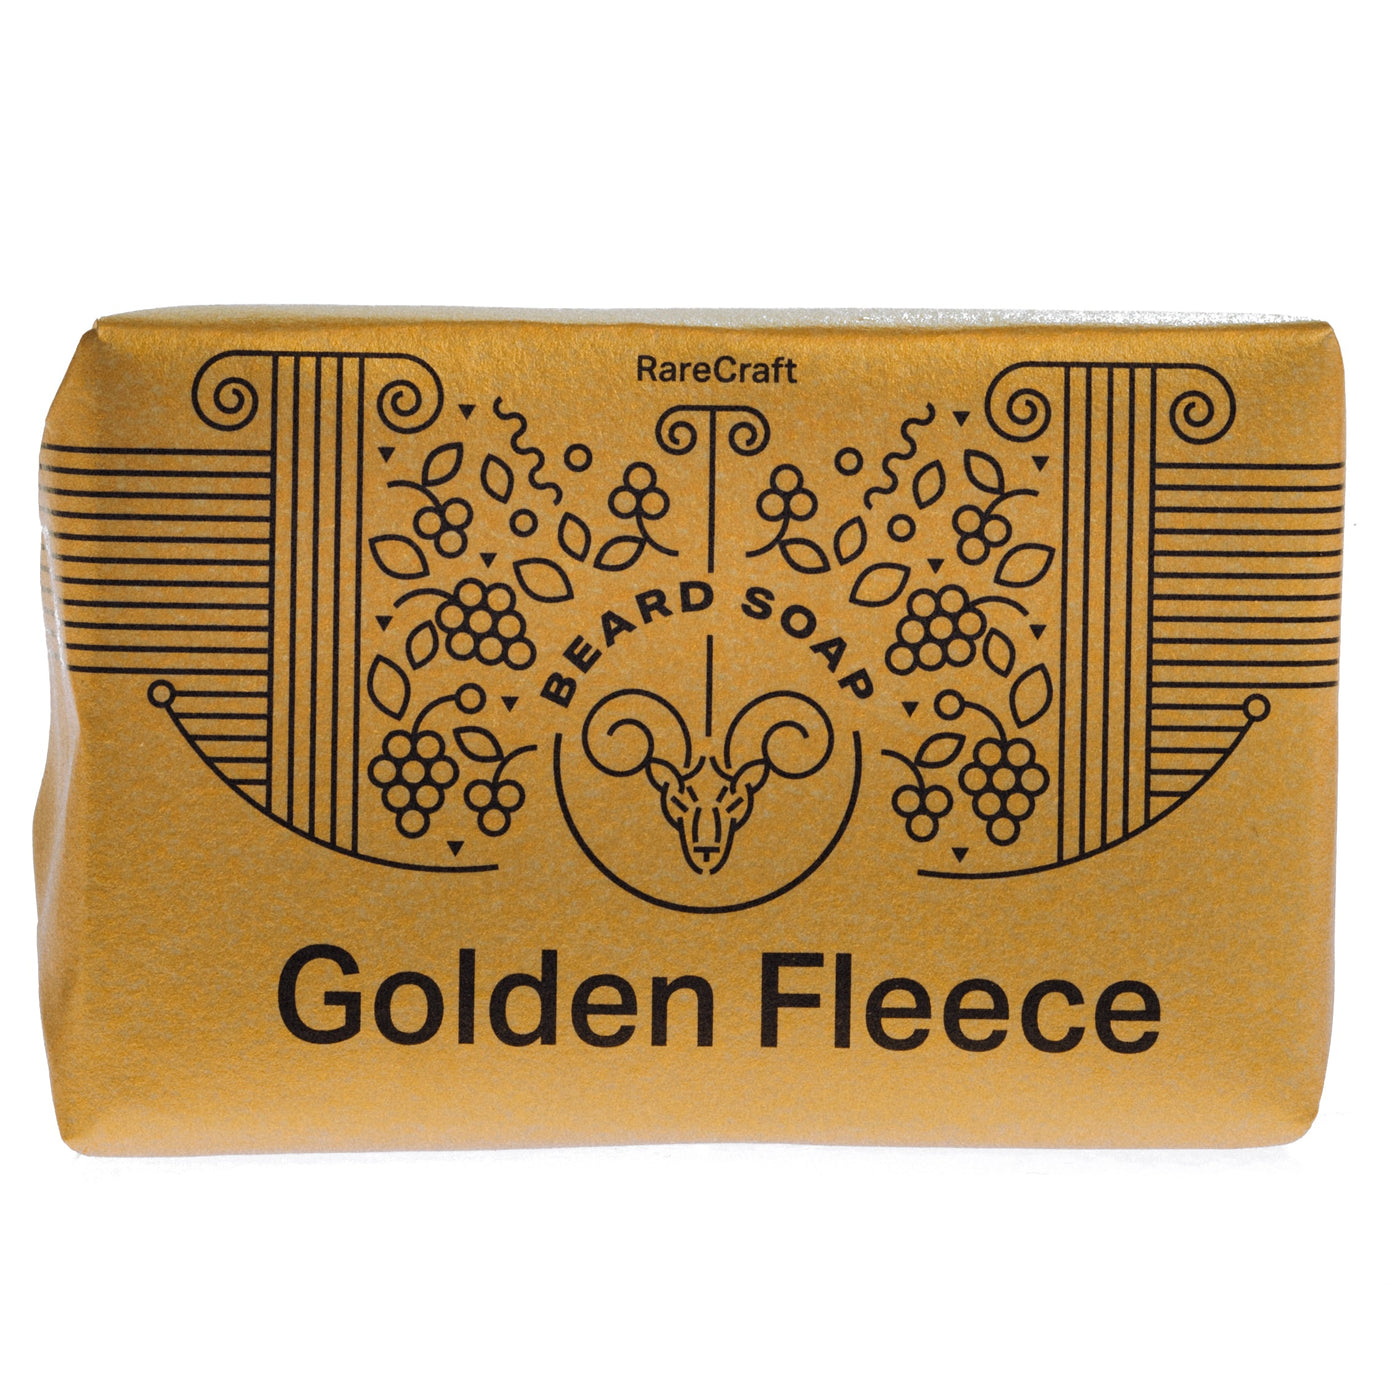 ON DEMAND BARBERS - Golden Fleece Rarecraft Skjeggsåpe 110g